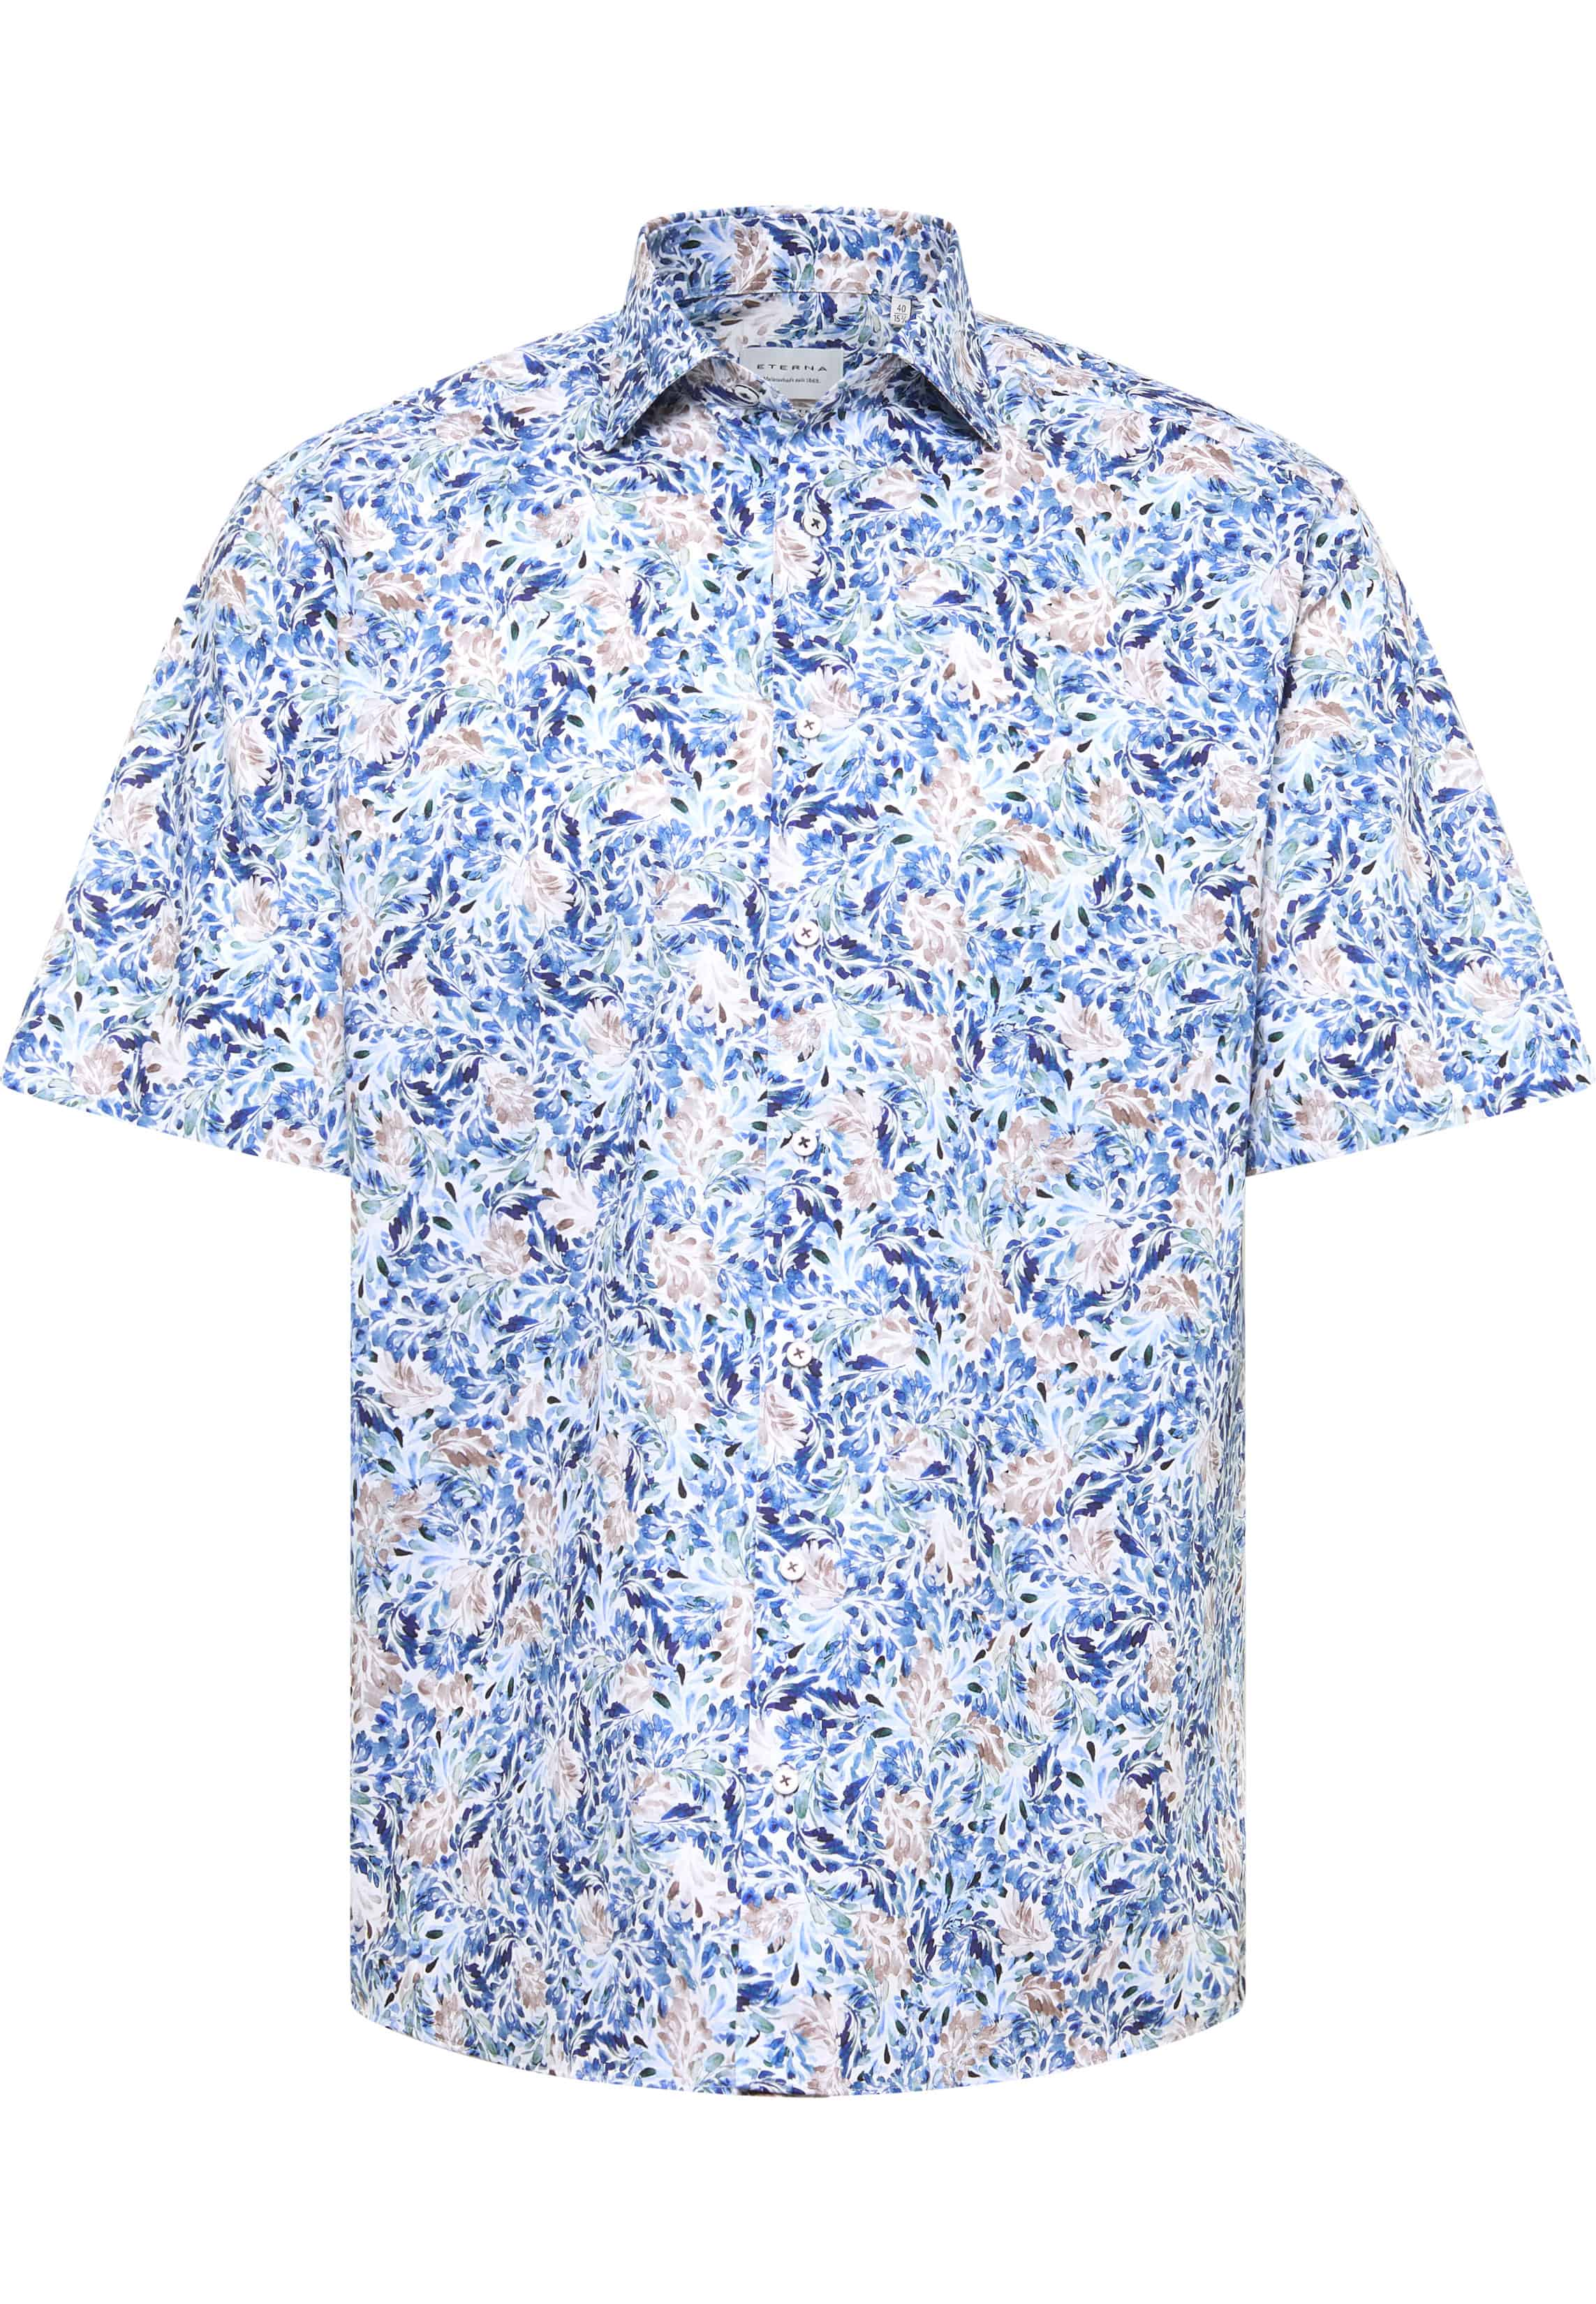 COMFORT FIT Shirt in medium blue printed